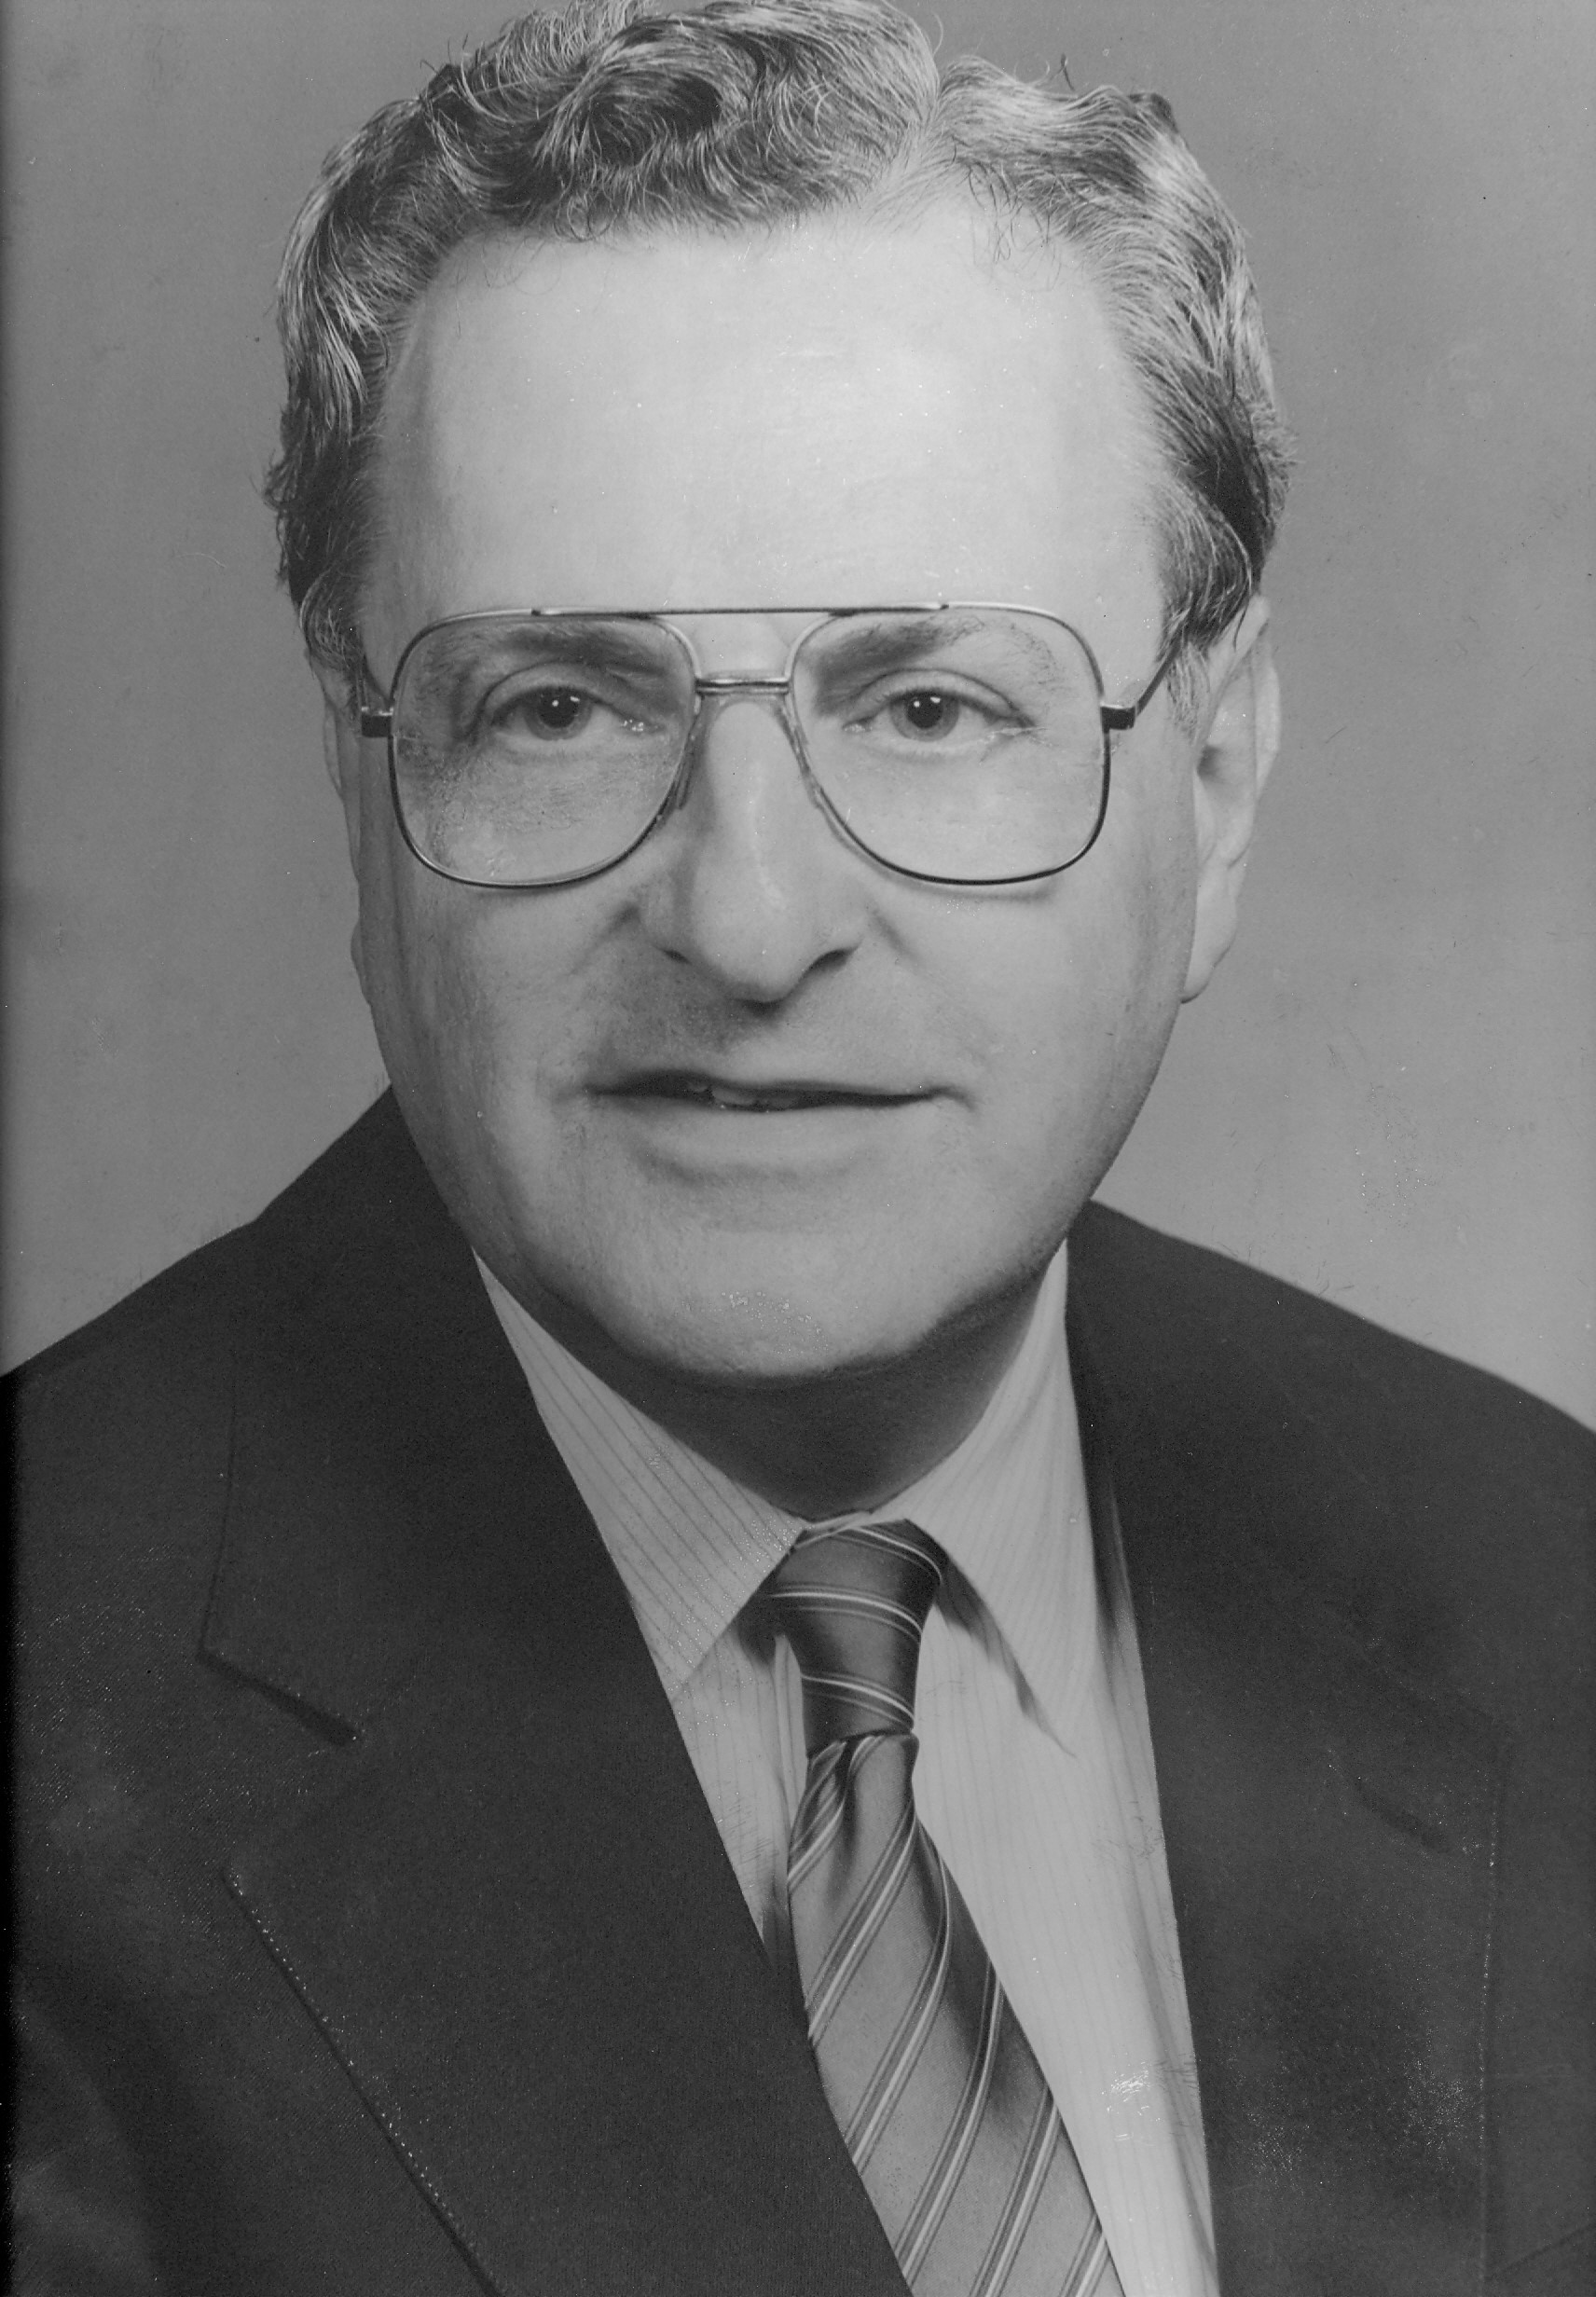 Dr. Heinz Eichenwald